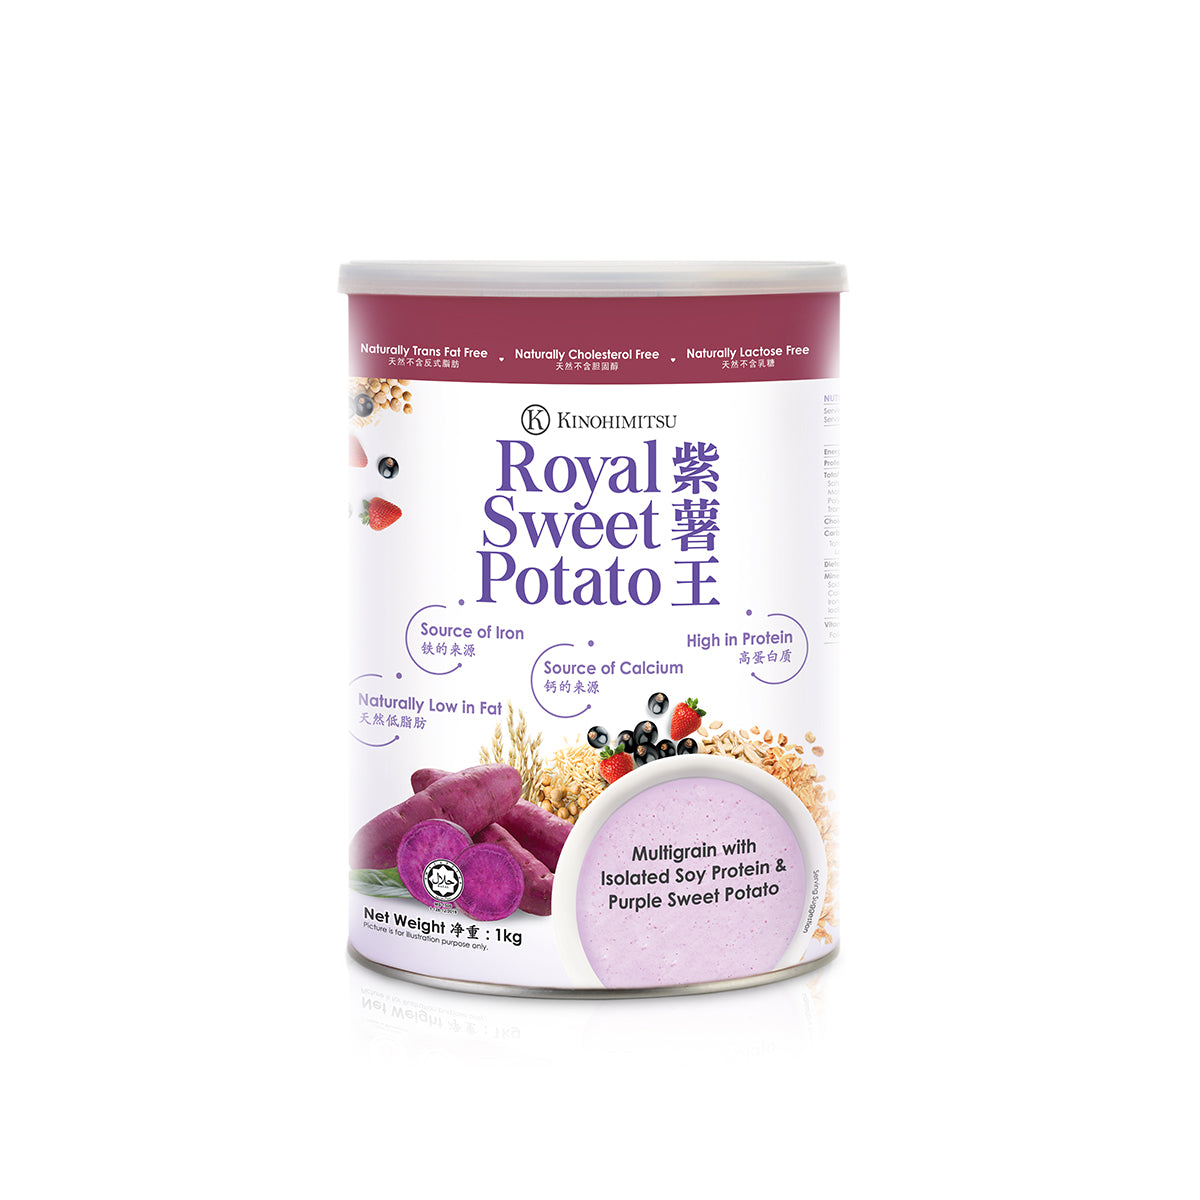 Royal Sweet Potato